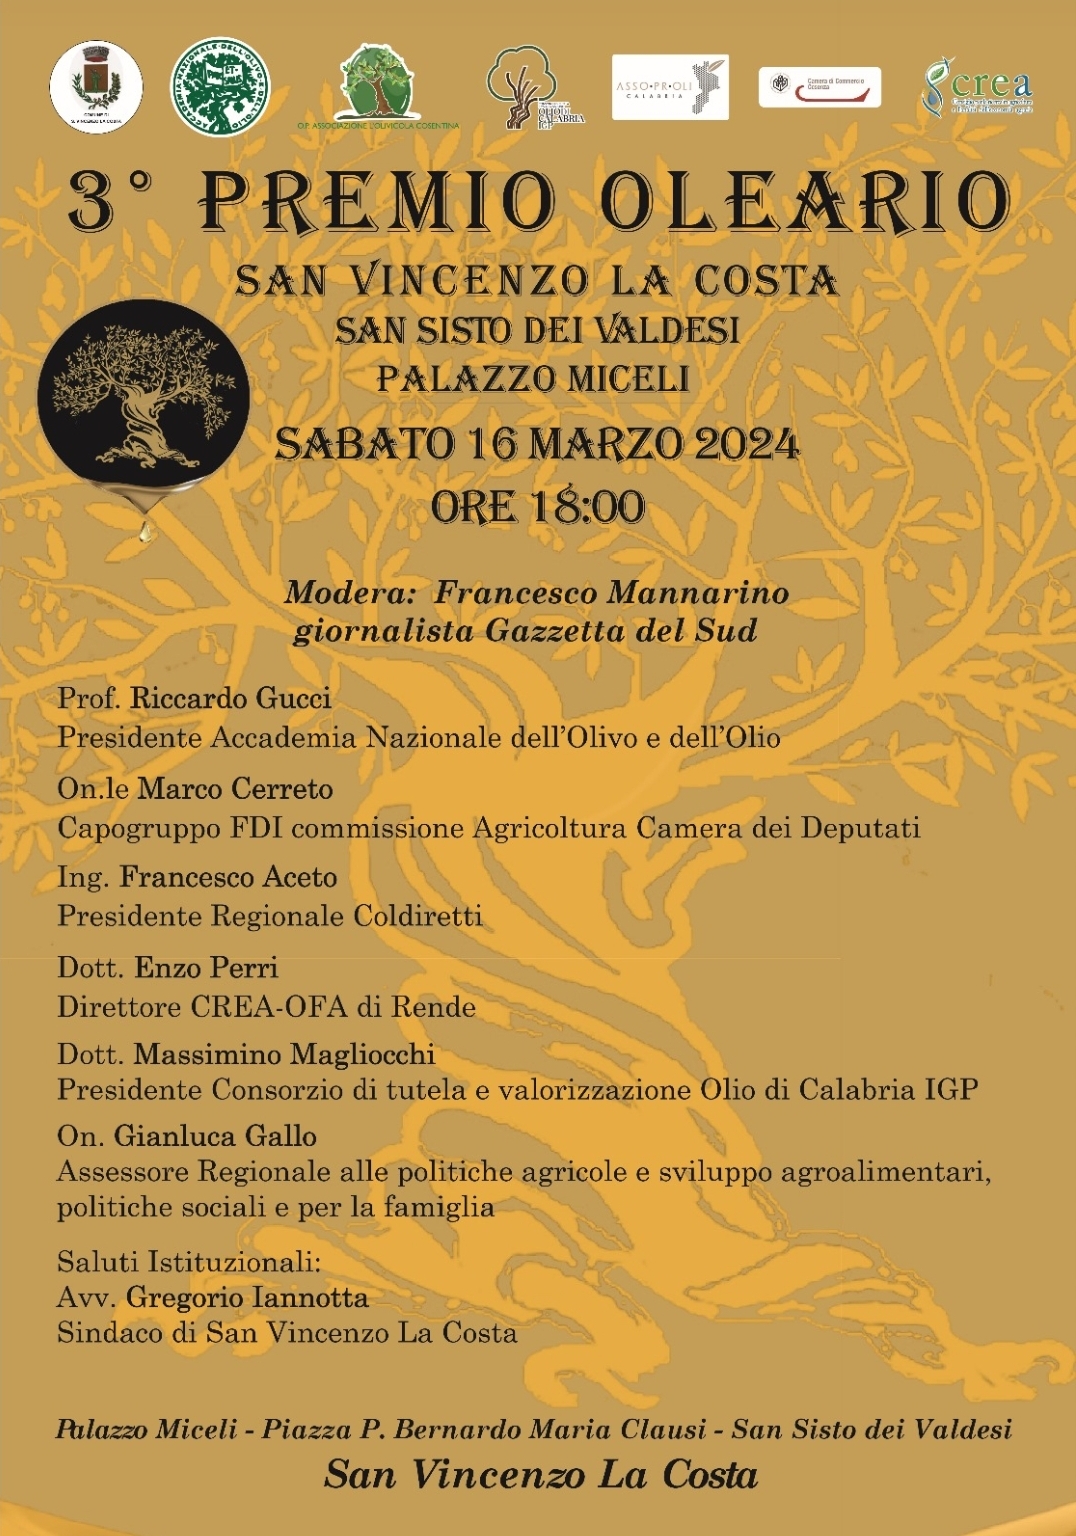 A San Vincenzo La Costa il terzo premio oleario “Nino Giannotta”.